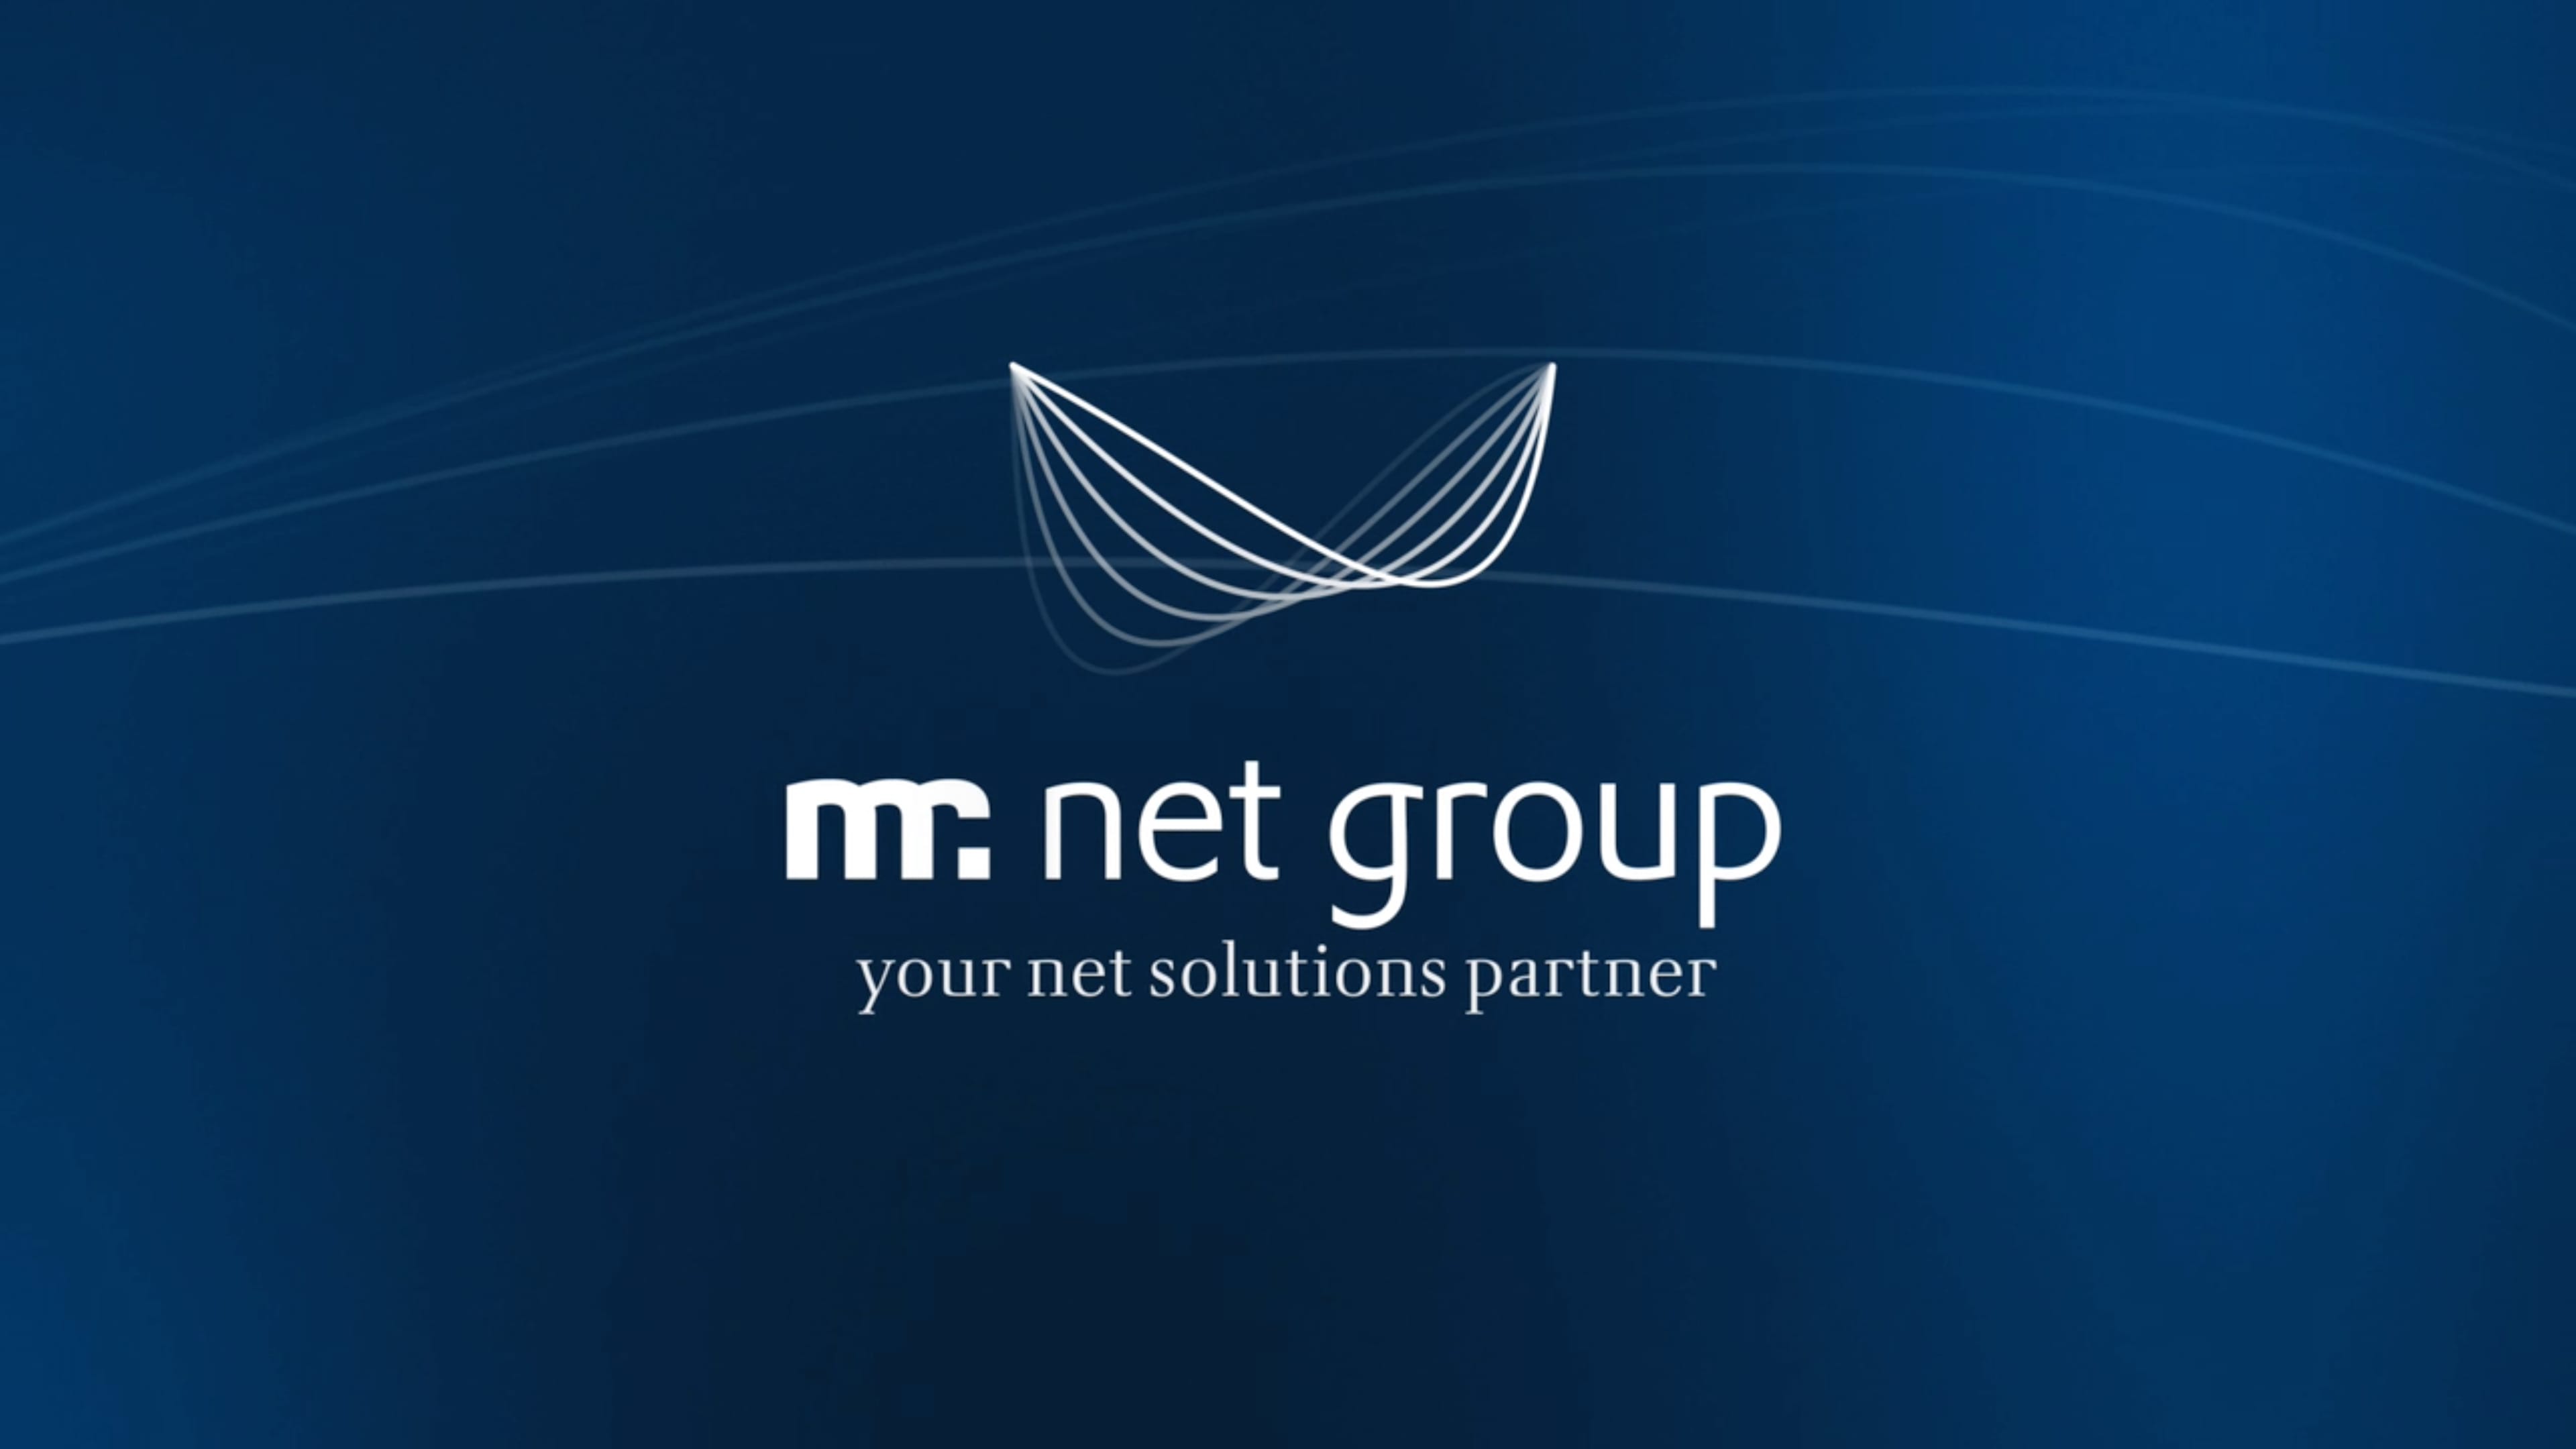 Logo von mr net group auf dunkelblauen Hintergrund